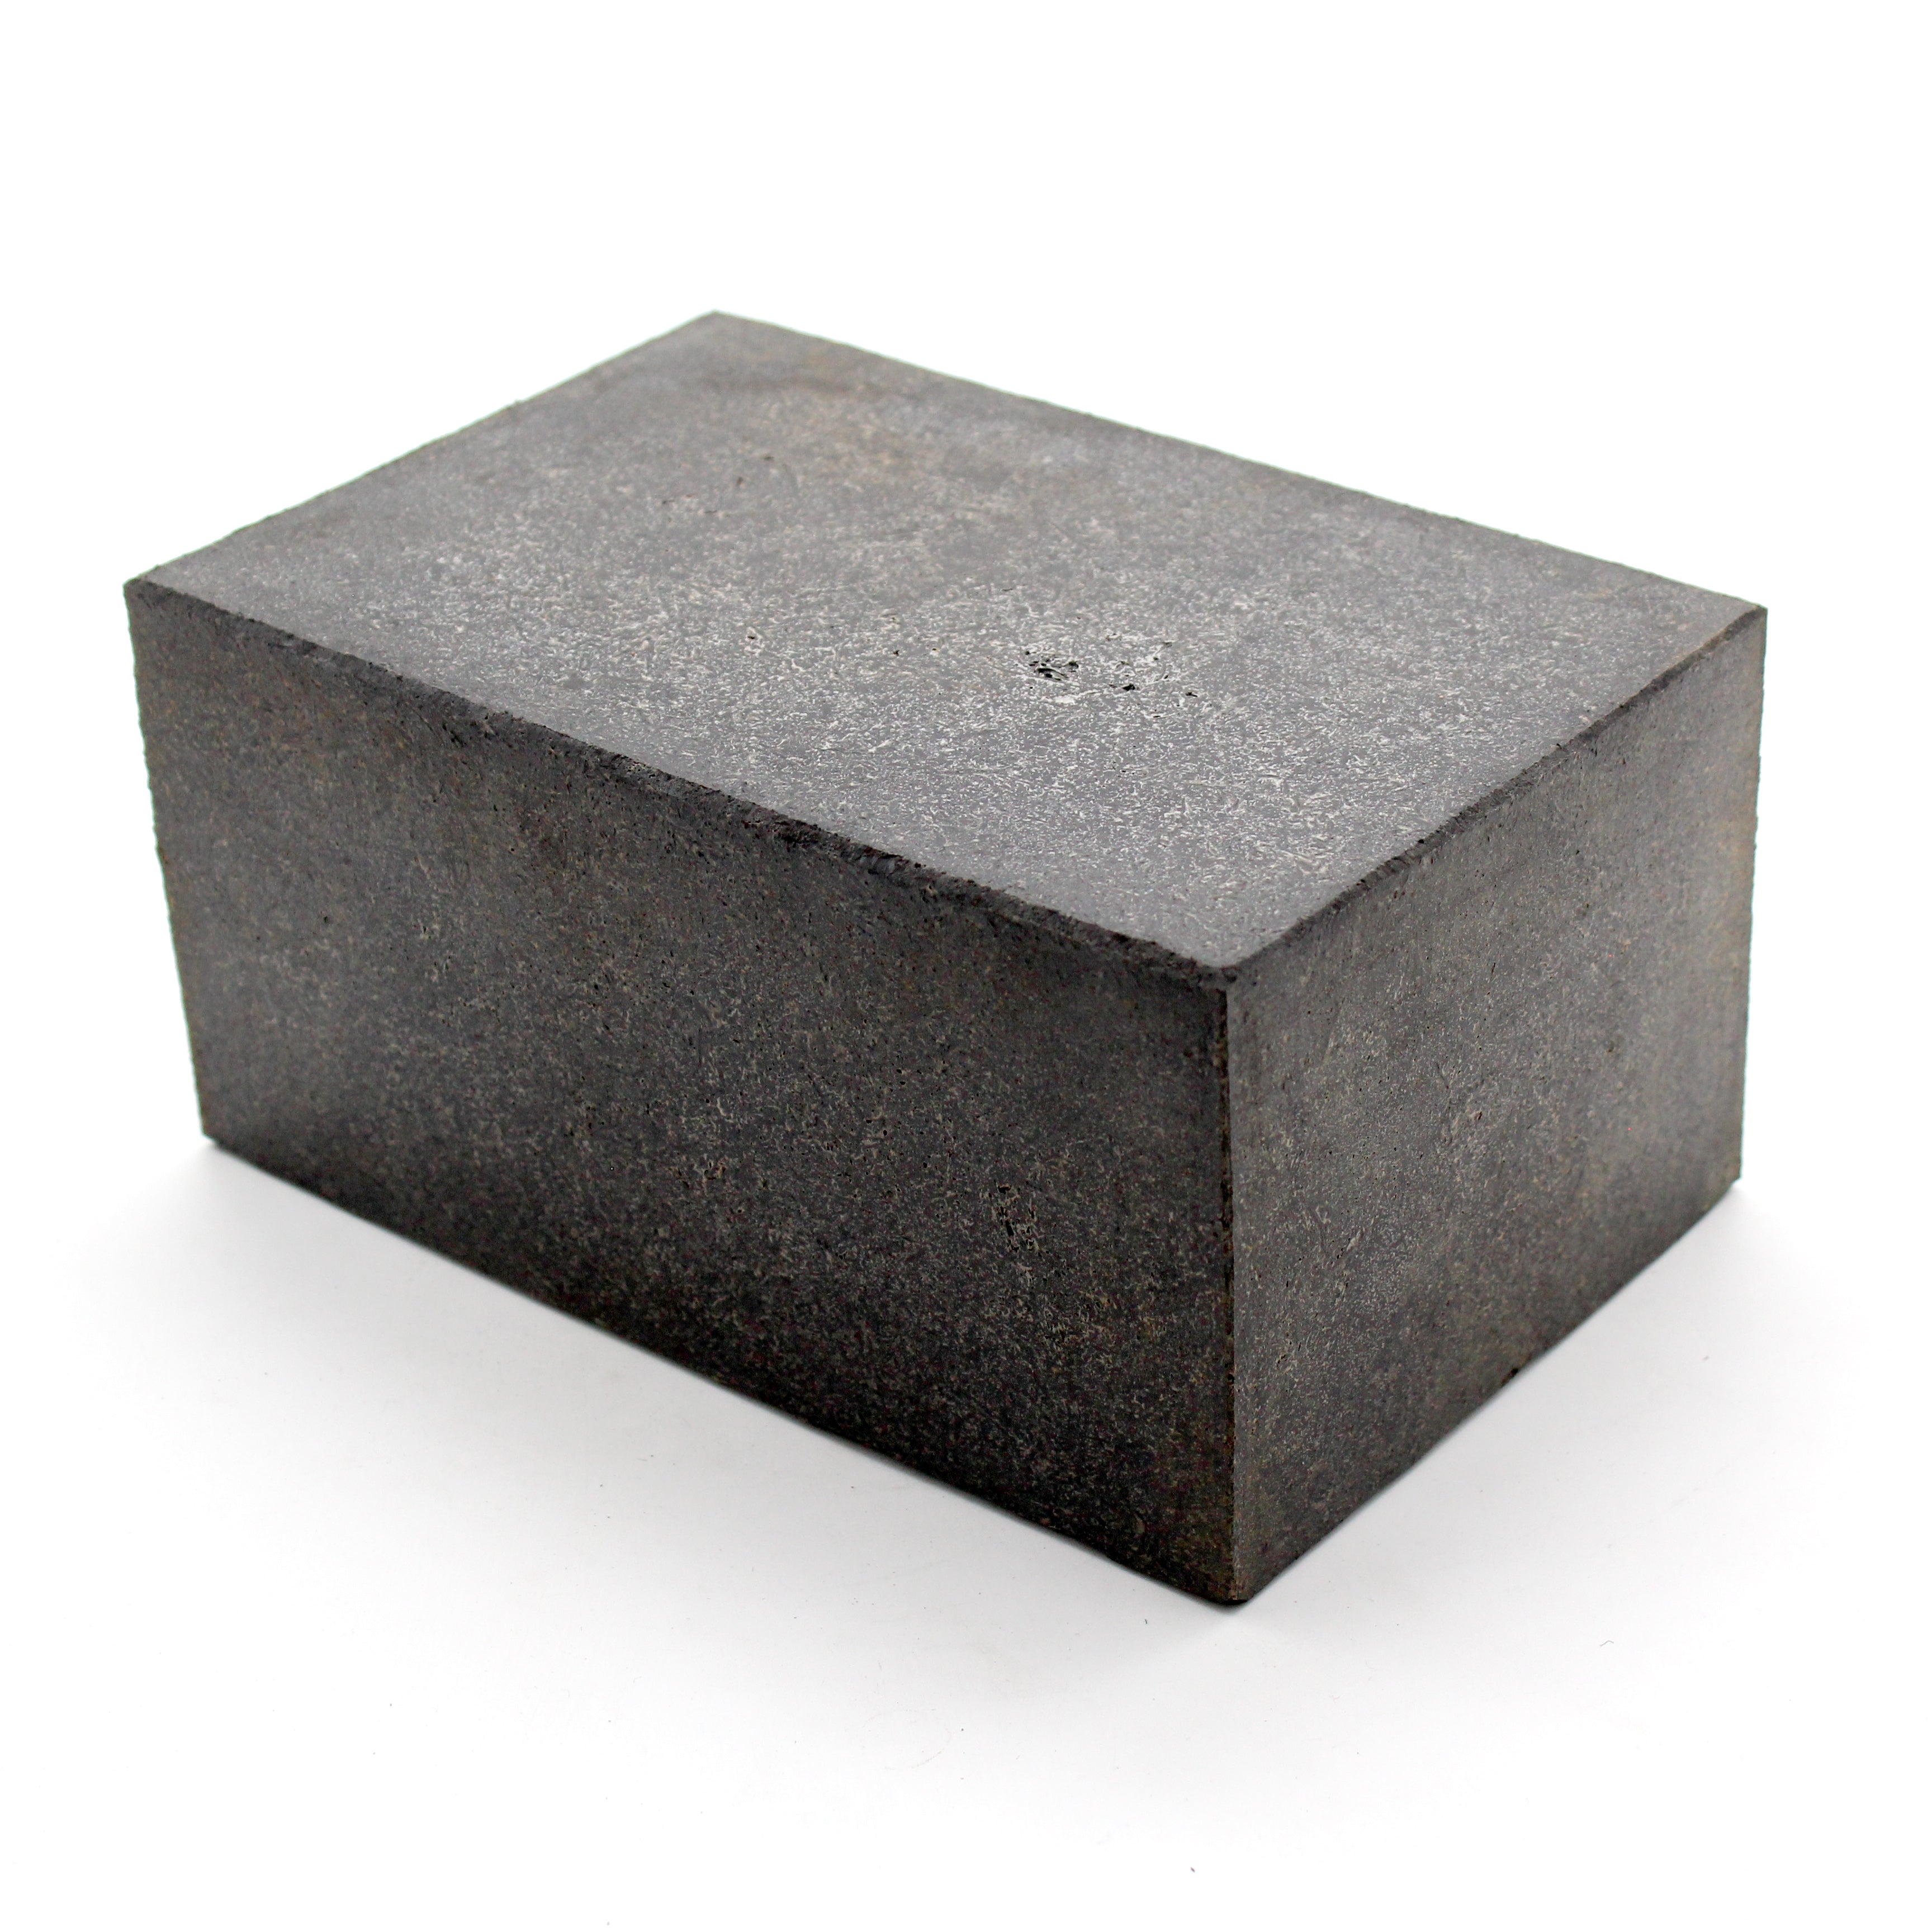 Rubber Blocks – Pro Auto Rubber